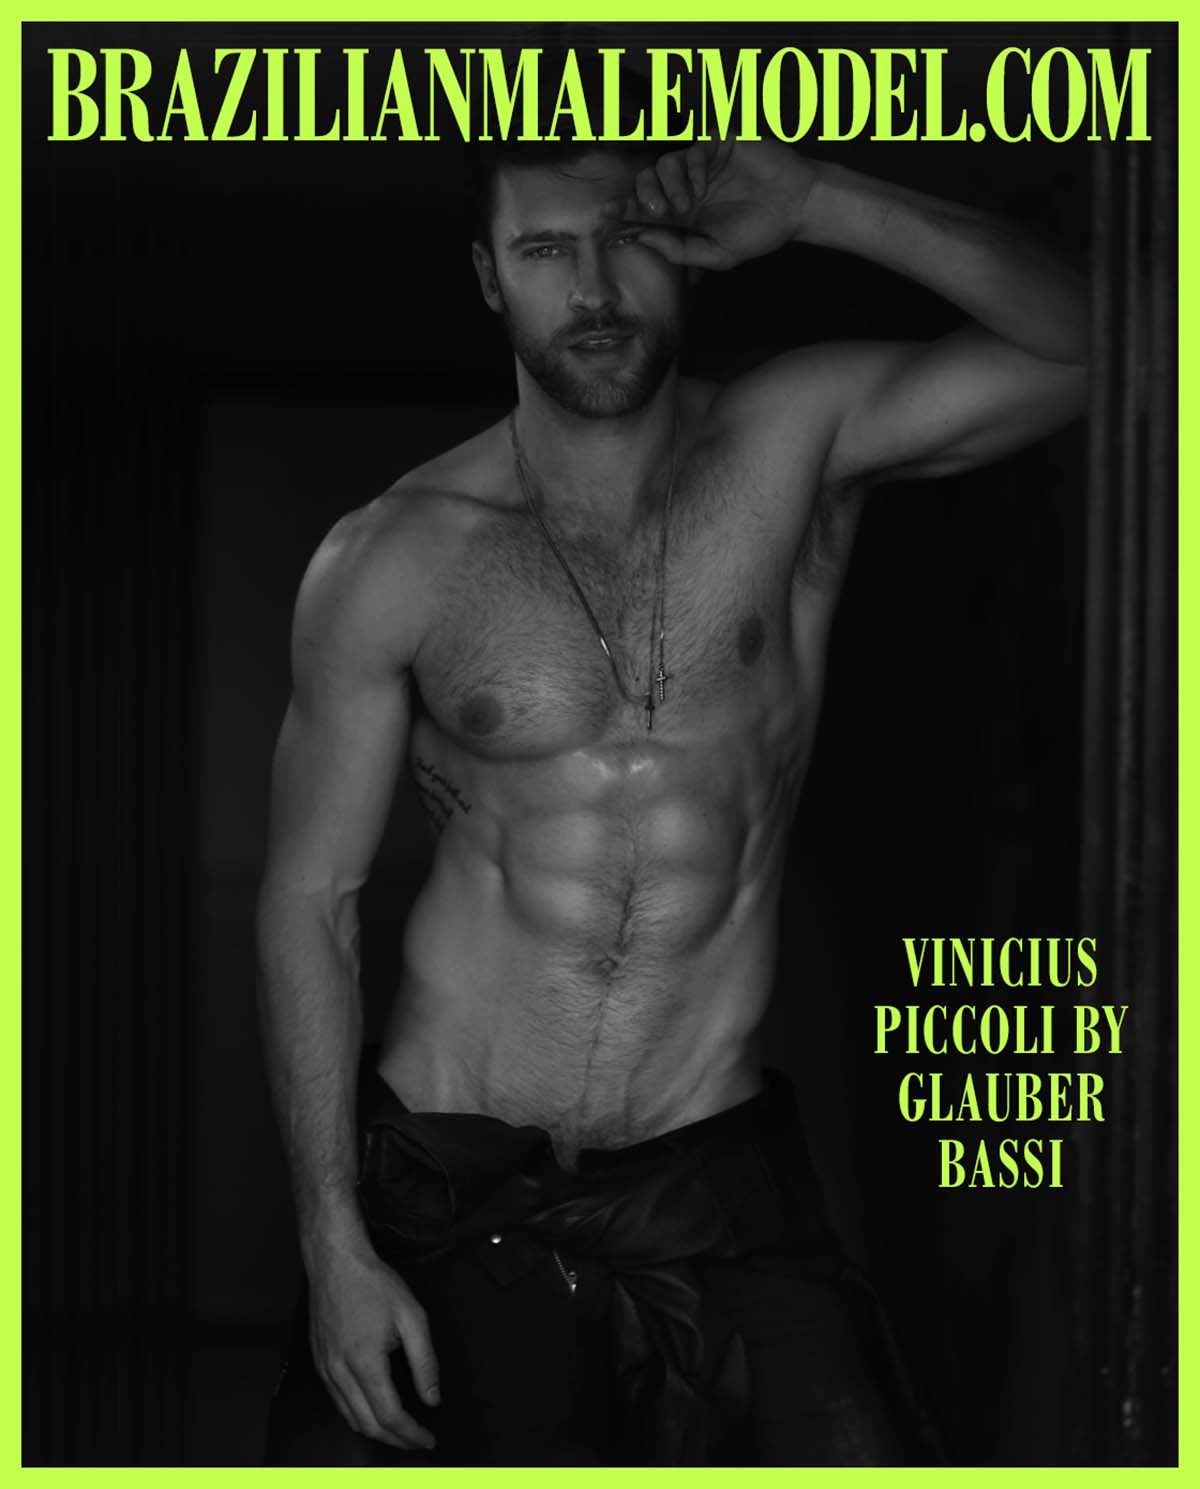 Vinicius Piccoli by Glauber Bassi